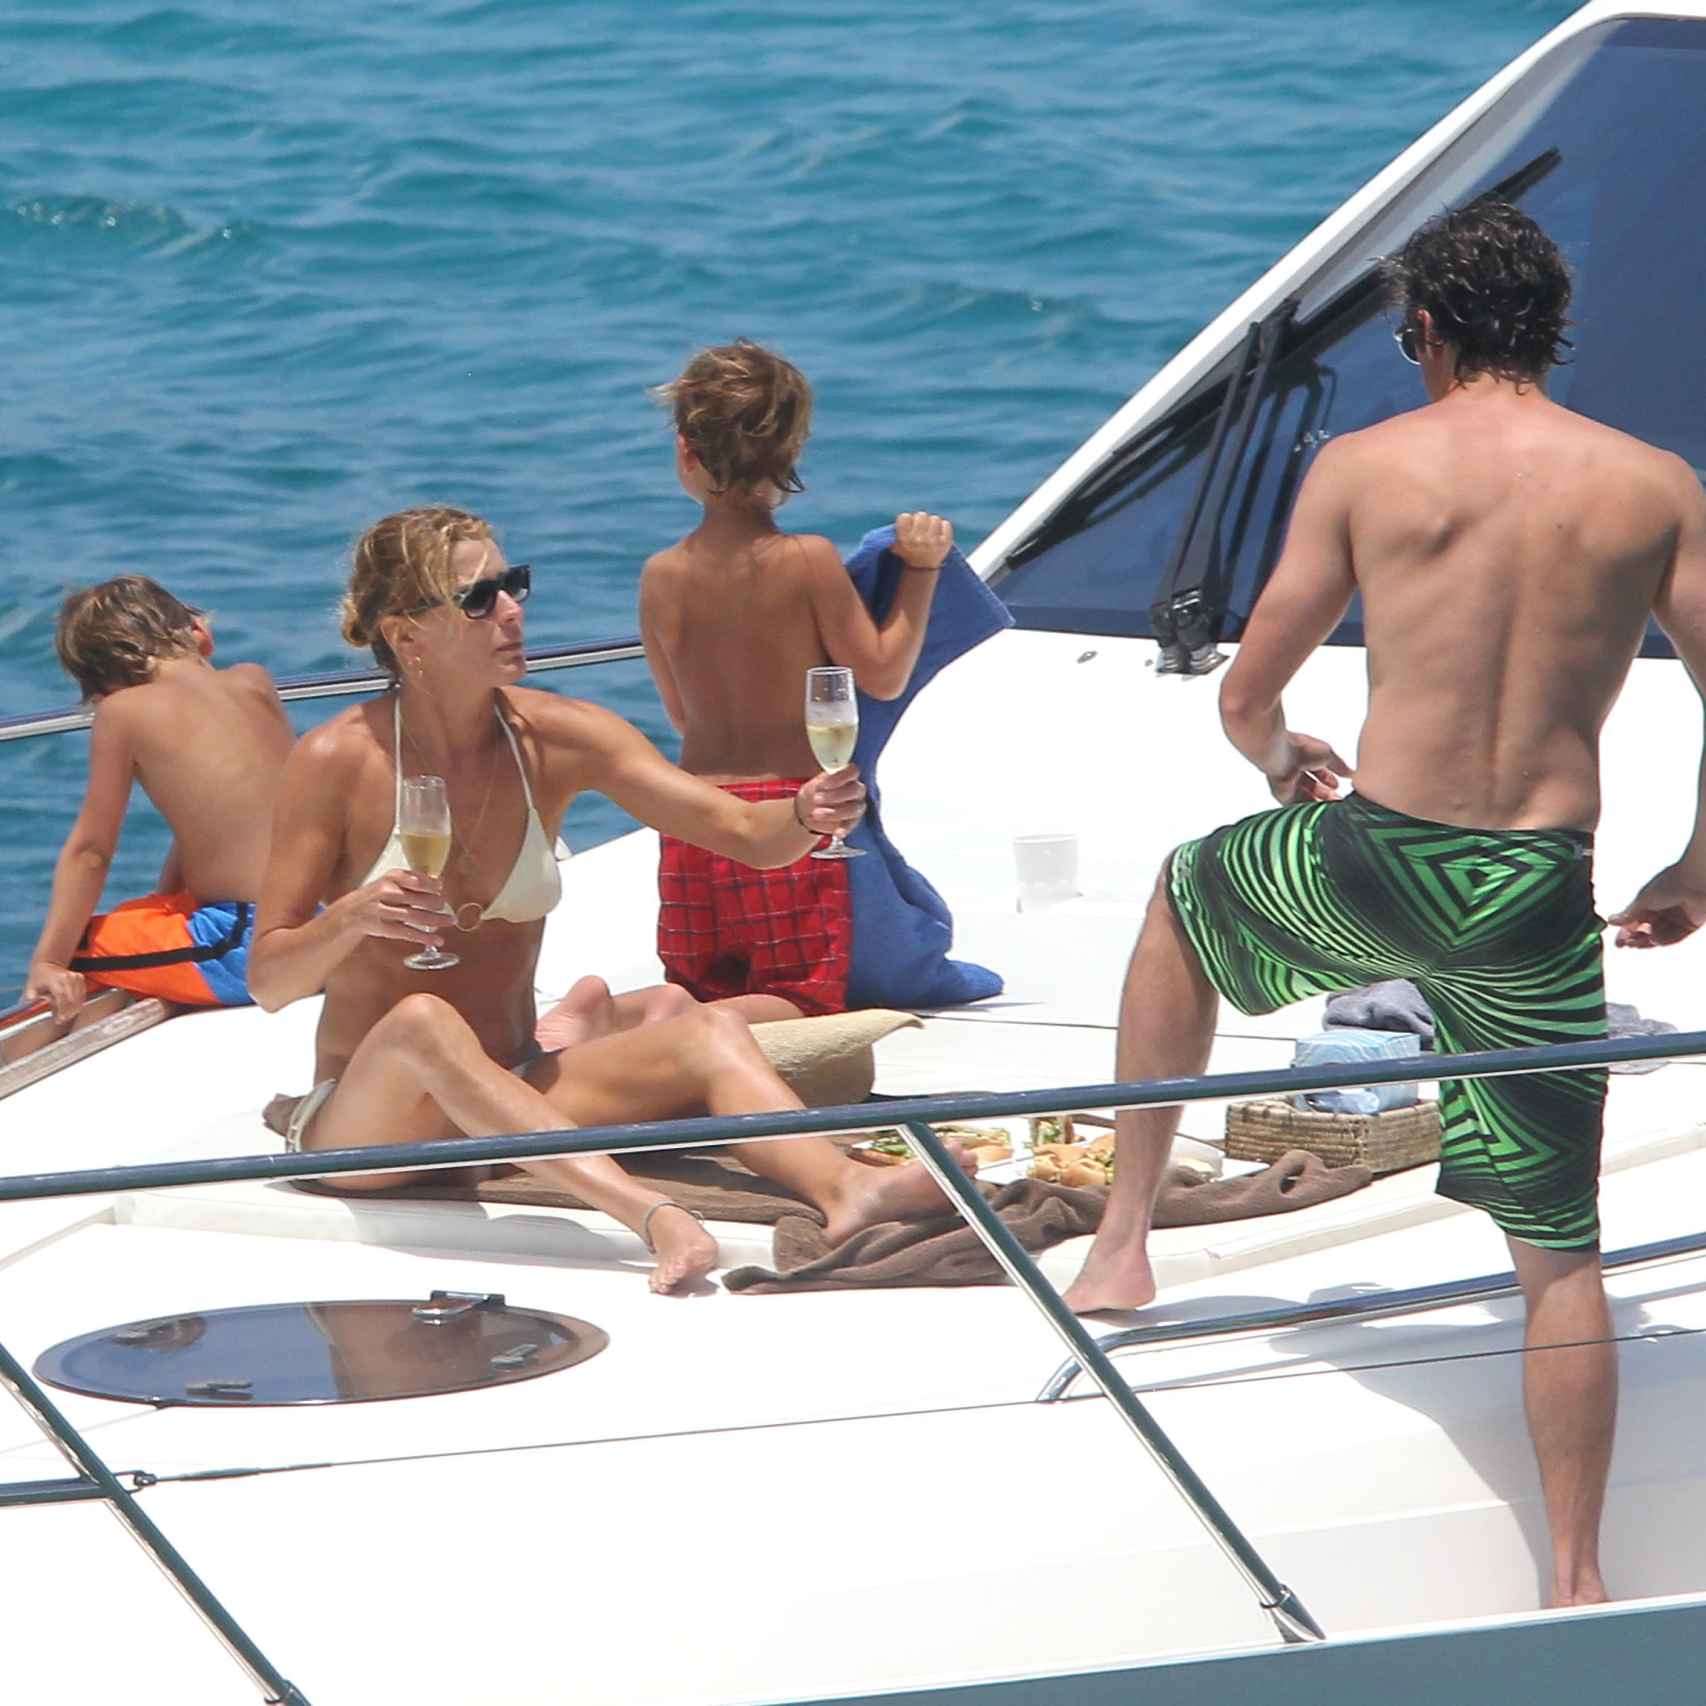 Dempsey, su mujer y sus hijos disfrutando de unas vacaciones a bordo de un yate